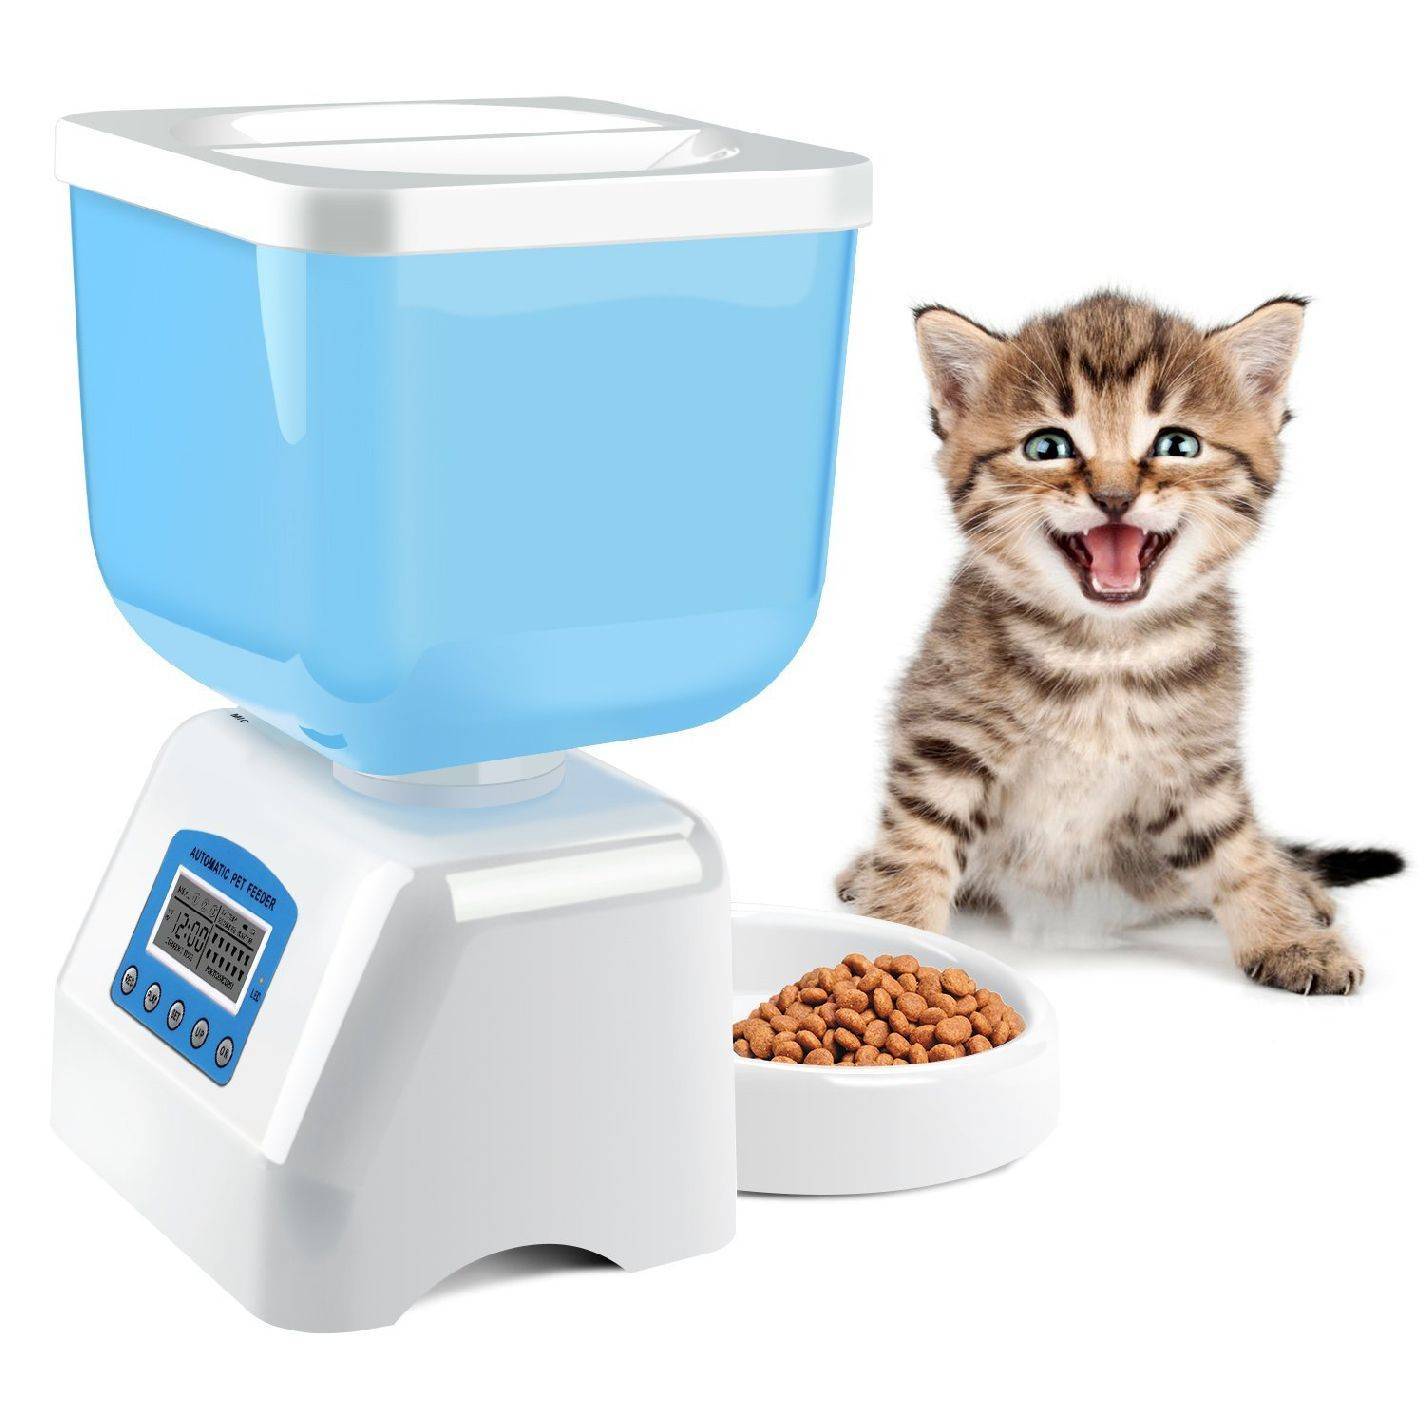 Нас и здесь неплохо кормят: автоматическая кормушка для кота